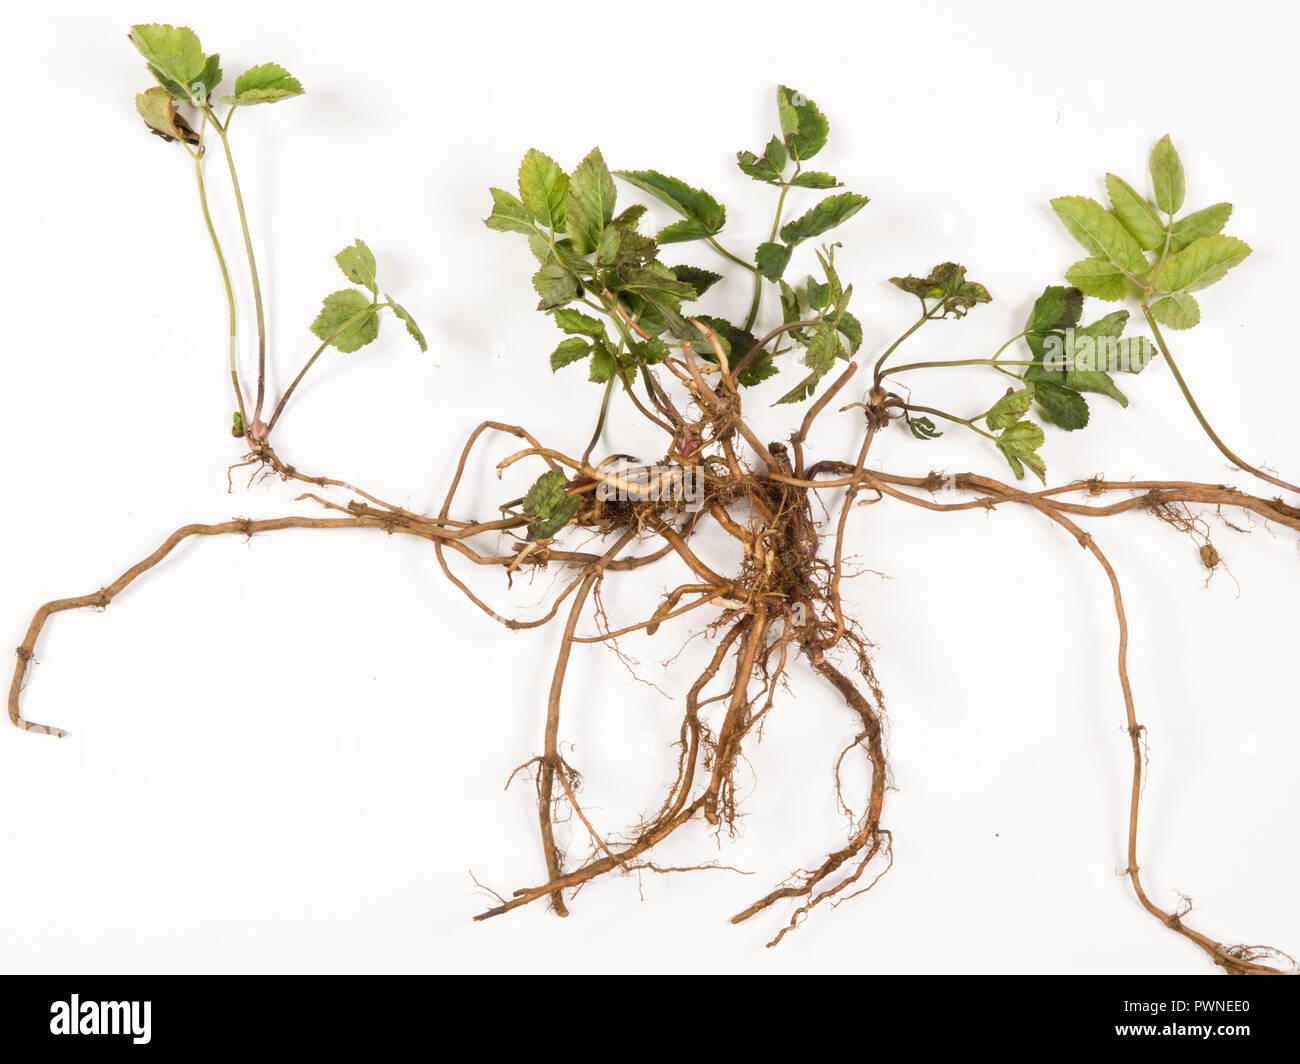 Erdälteste, Aegopodium podagraria, Pflanze aus einem Gemüsebeet, das beprobt wurde, um kriechende rhizomatöse Wurzeln zu zeigen Stockfoto